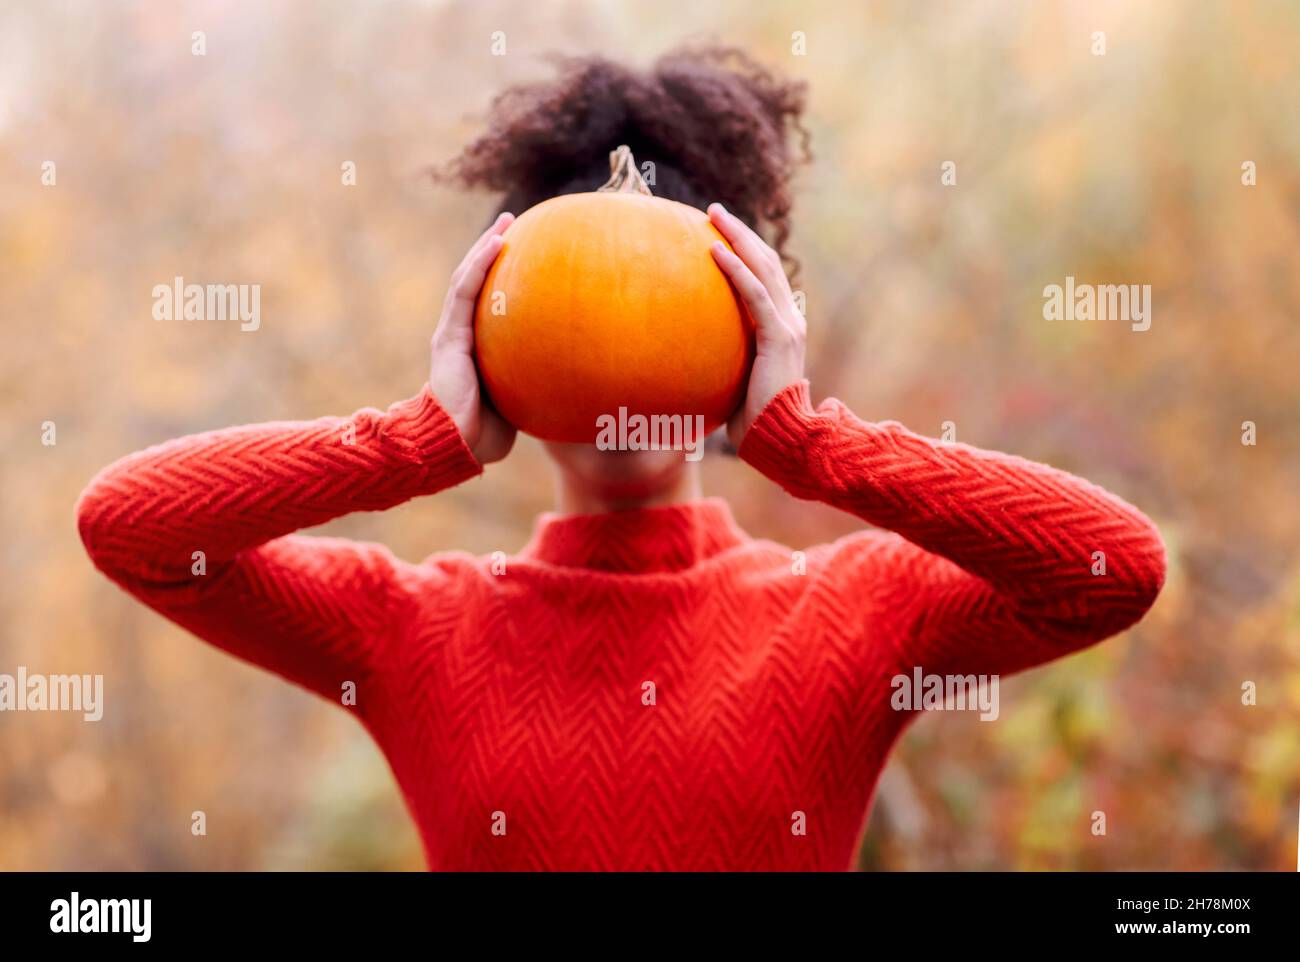 Jeune femme de race mixte avec des cheveux bouclés tenant la citrouille d'orange tout en se tenant contre un arrière-plan flou de forêt d'automne.Saison d'automne et concept de récolte Banque D'Images